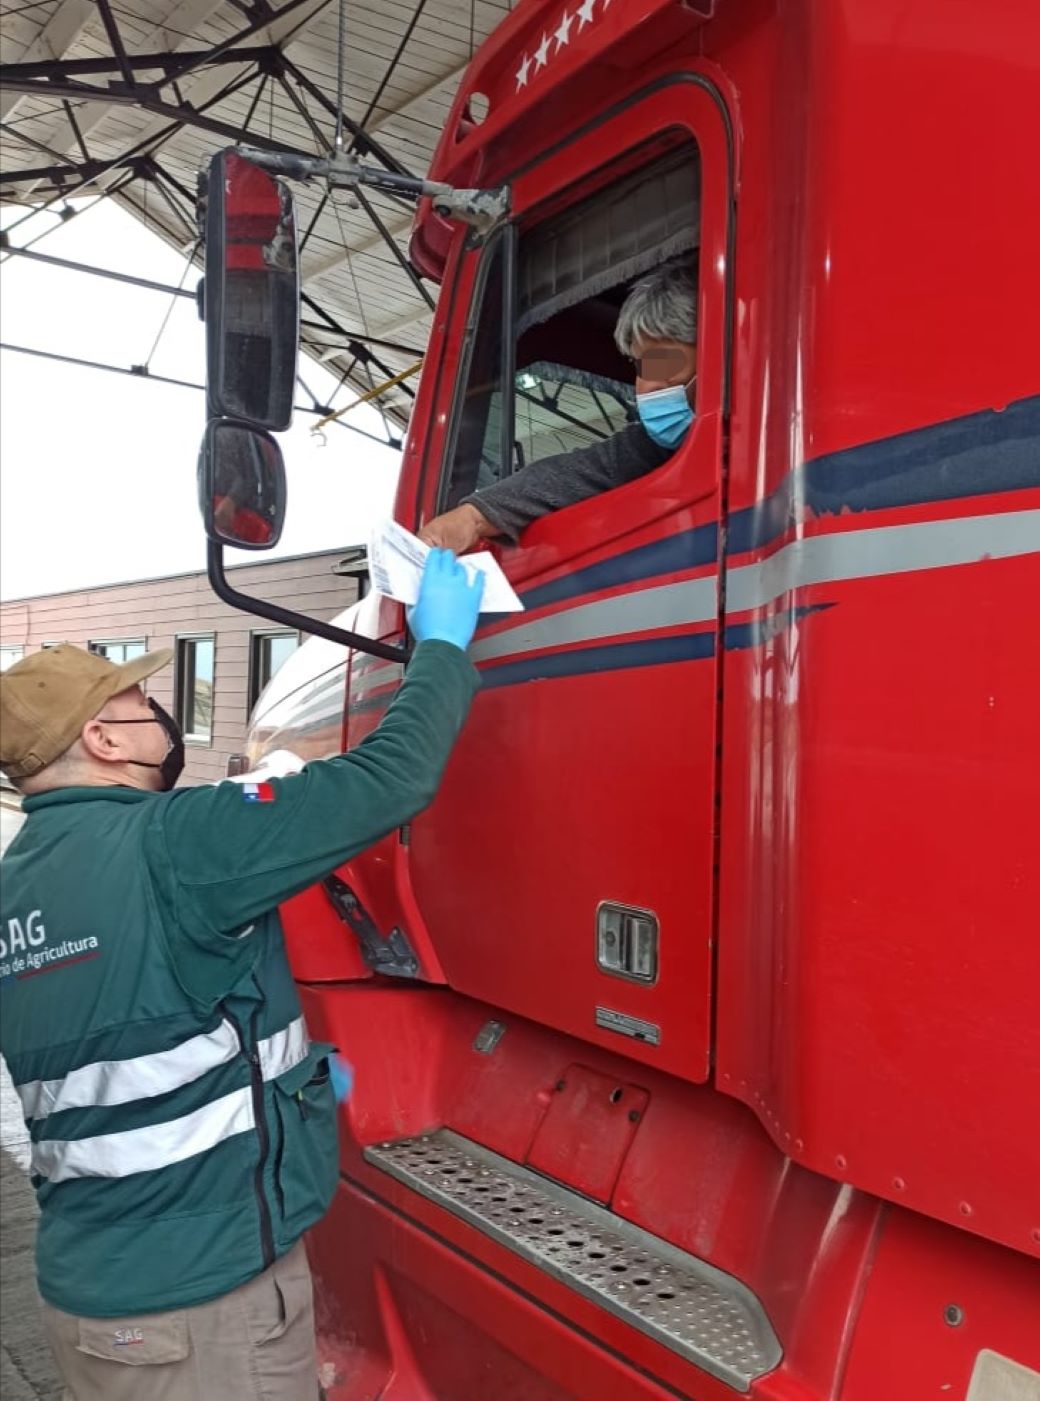 Seremi de Agricultura de Magallanes: “Estamos monitoreando flujo de tránsito de camiones con mercaderías silvoagropecuarias”